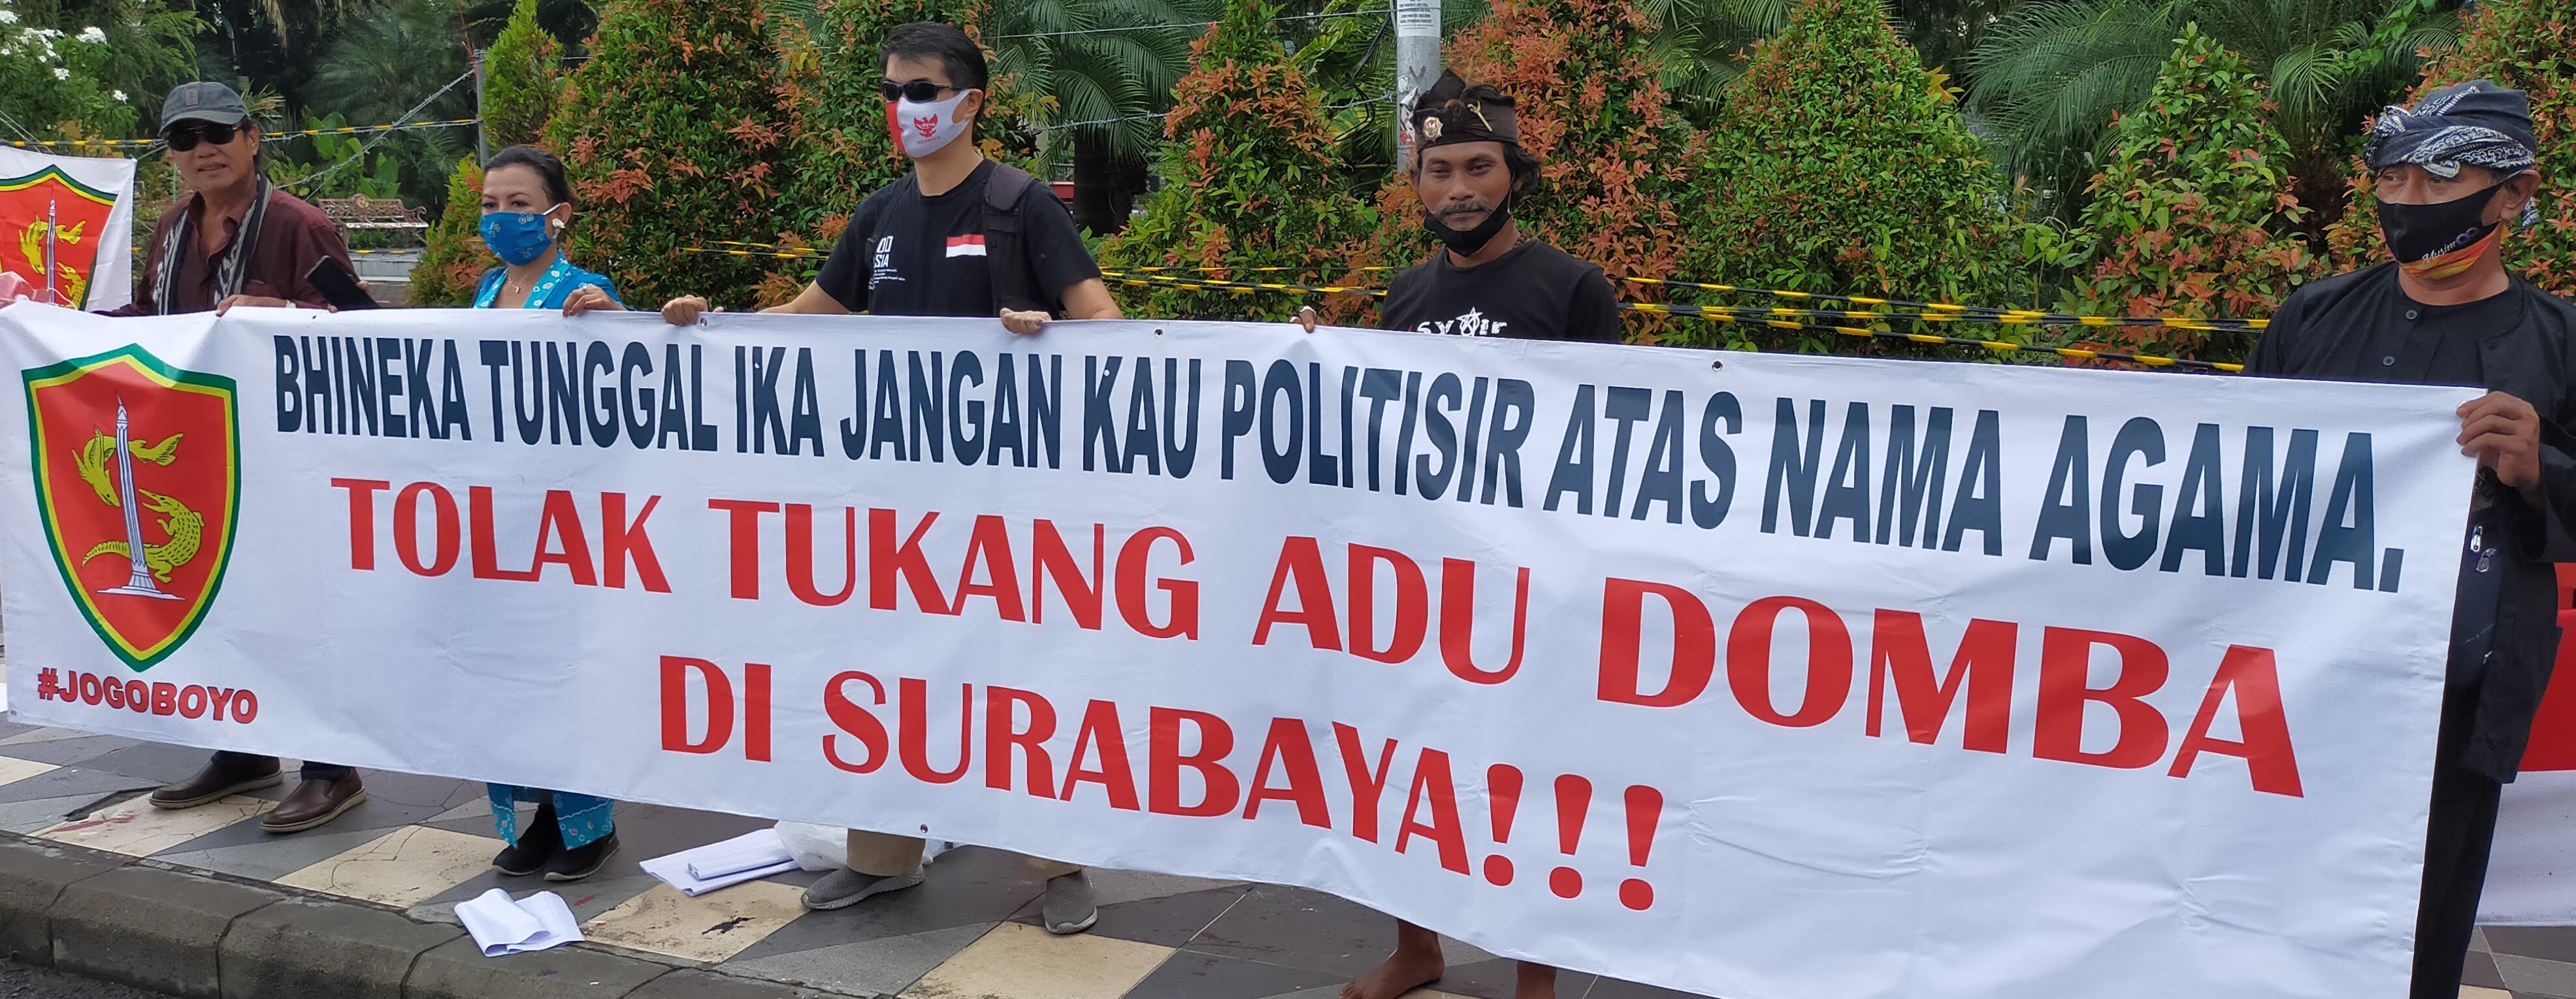 Warga Surabaya Tolak Rizieq Shihab